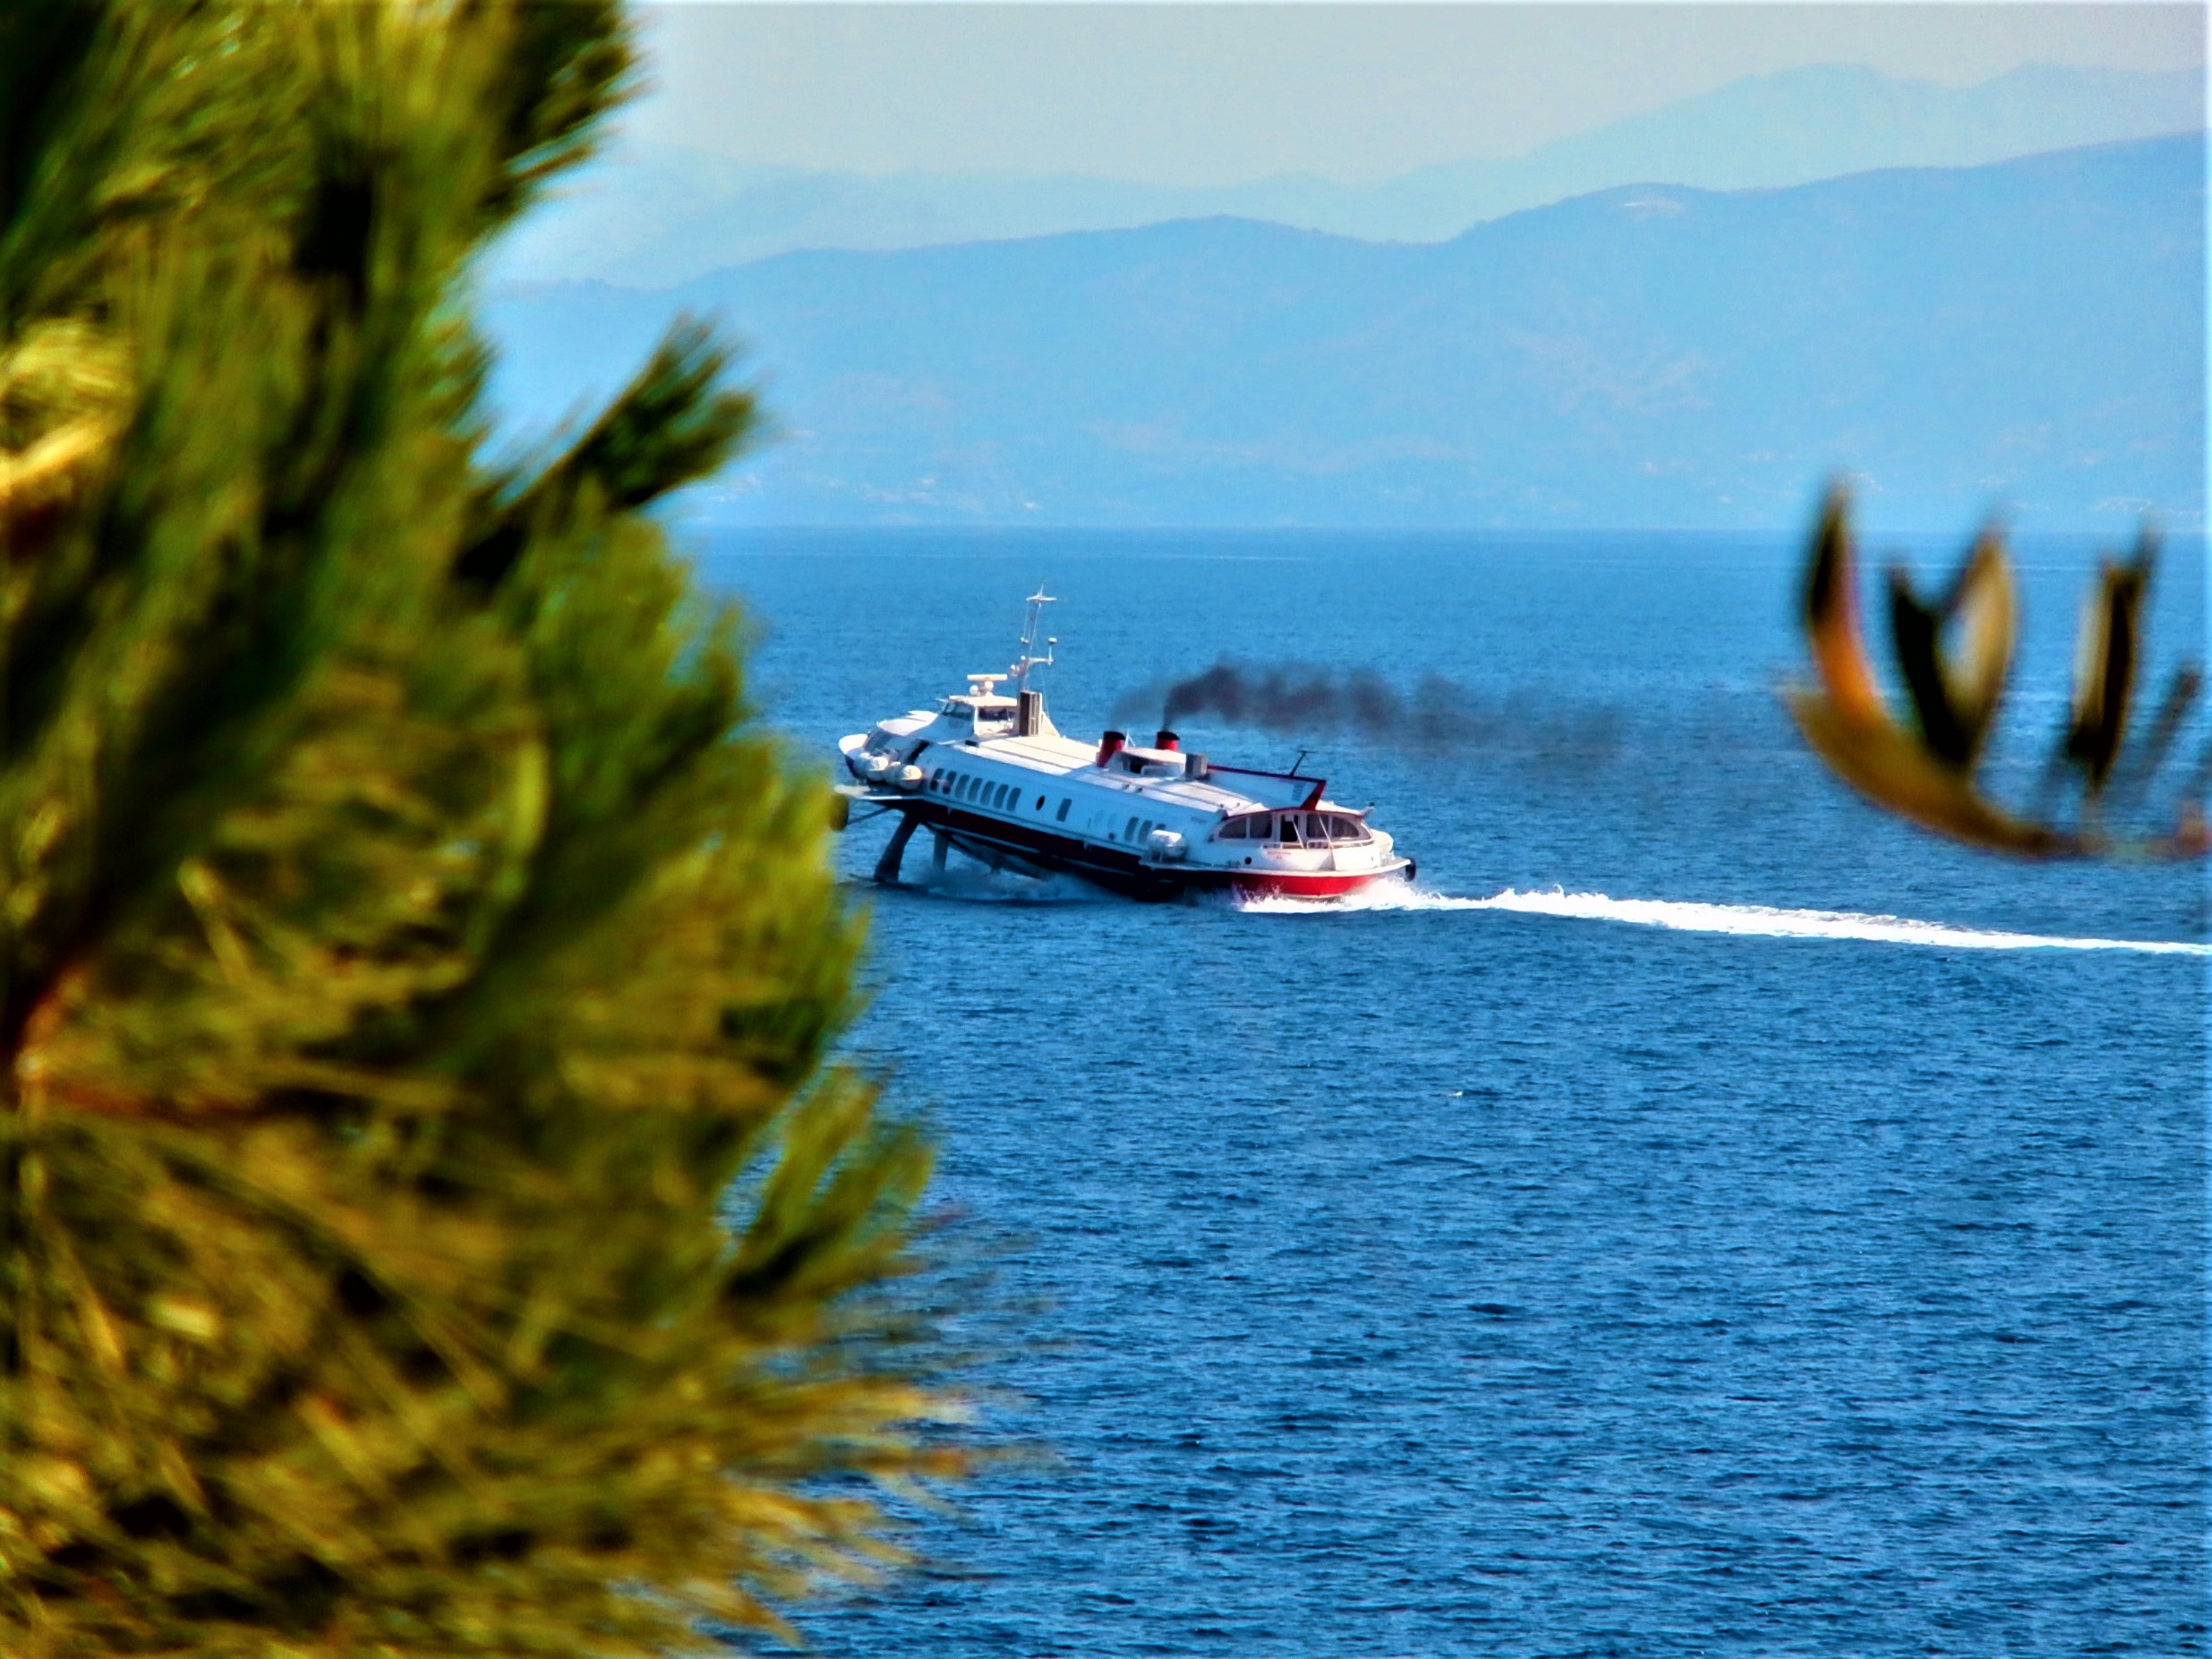 De snelste manier om tussen Corfu en Paxos te varen. (eigen foto)